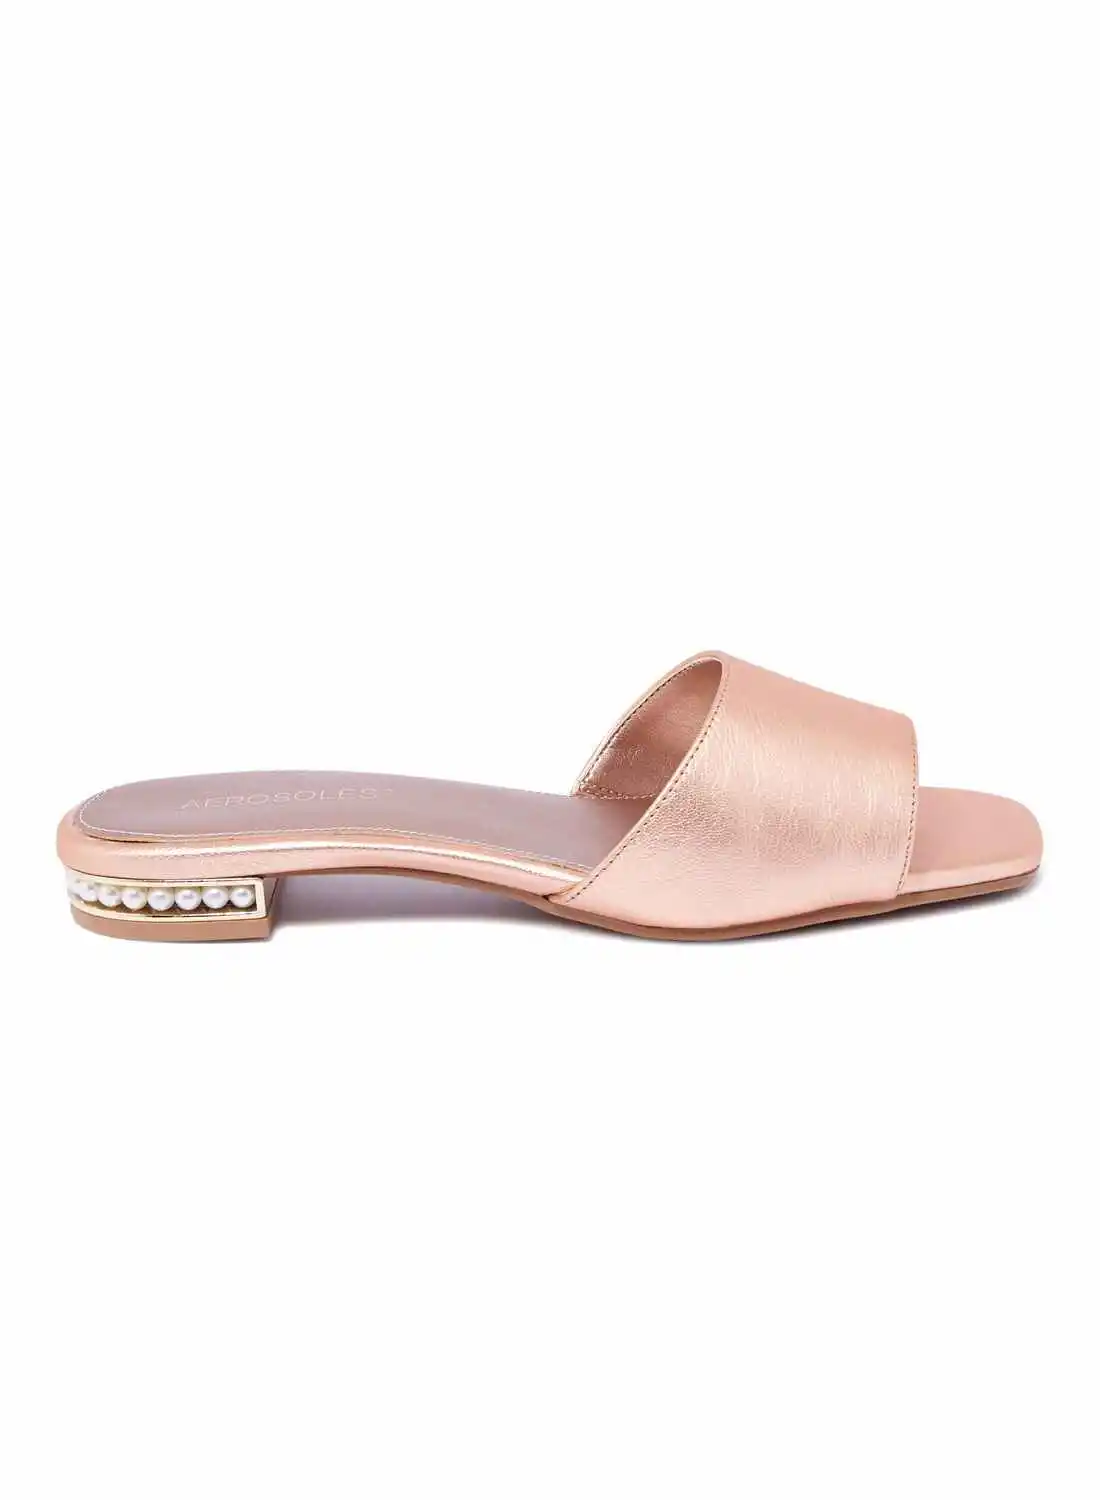 AEROSOLES Ladies Sandals Pink